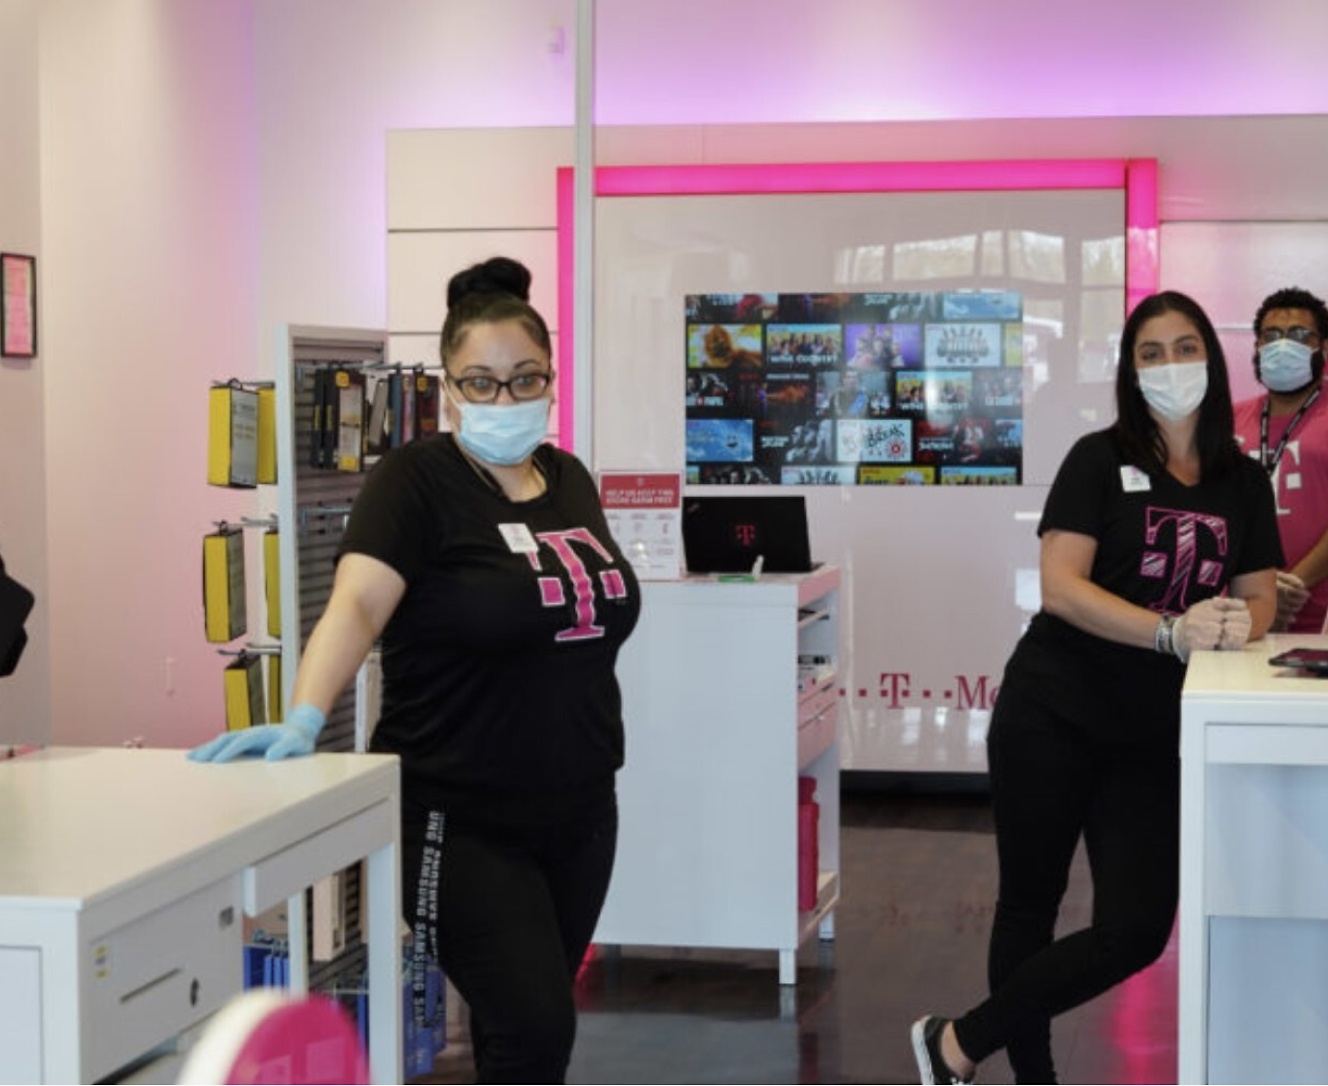 Um grupo de pessoas usando máscaras em uma loja.